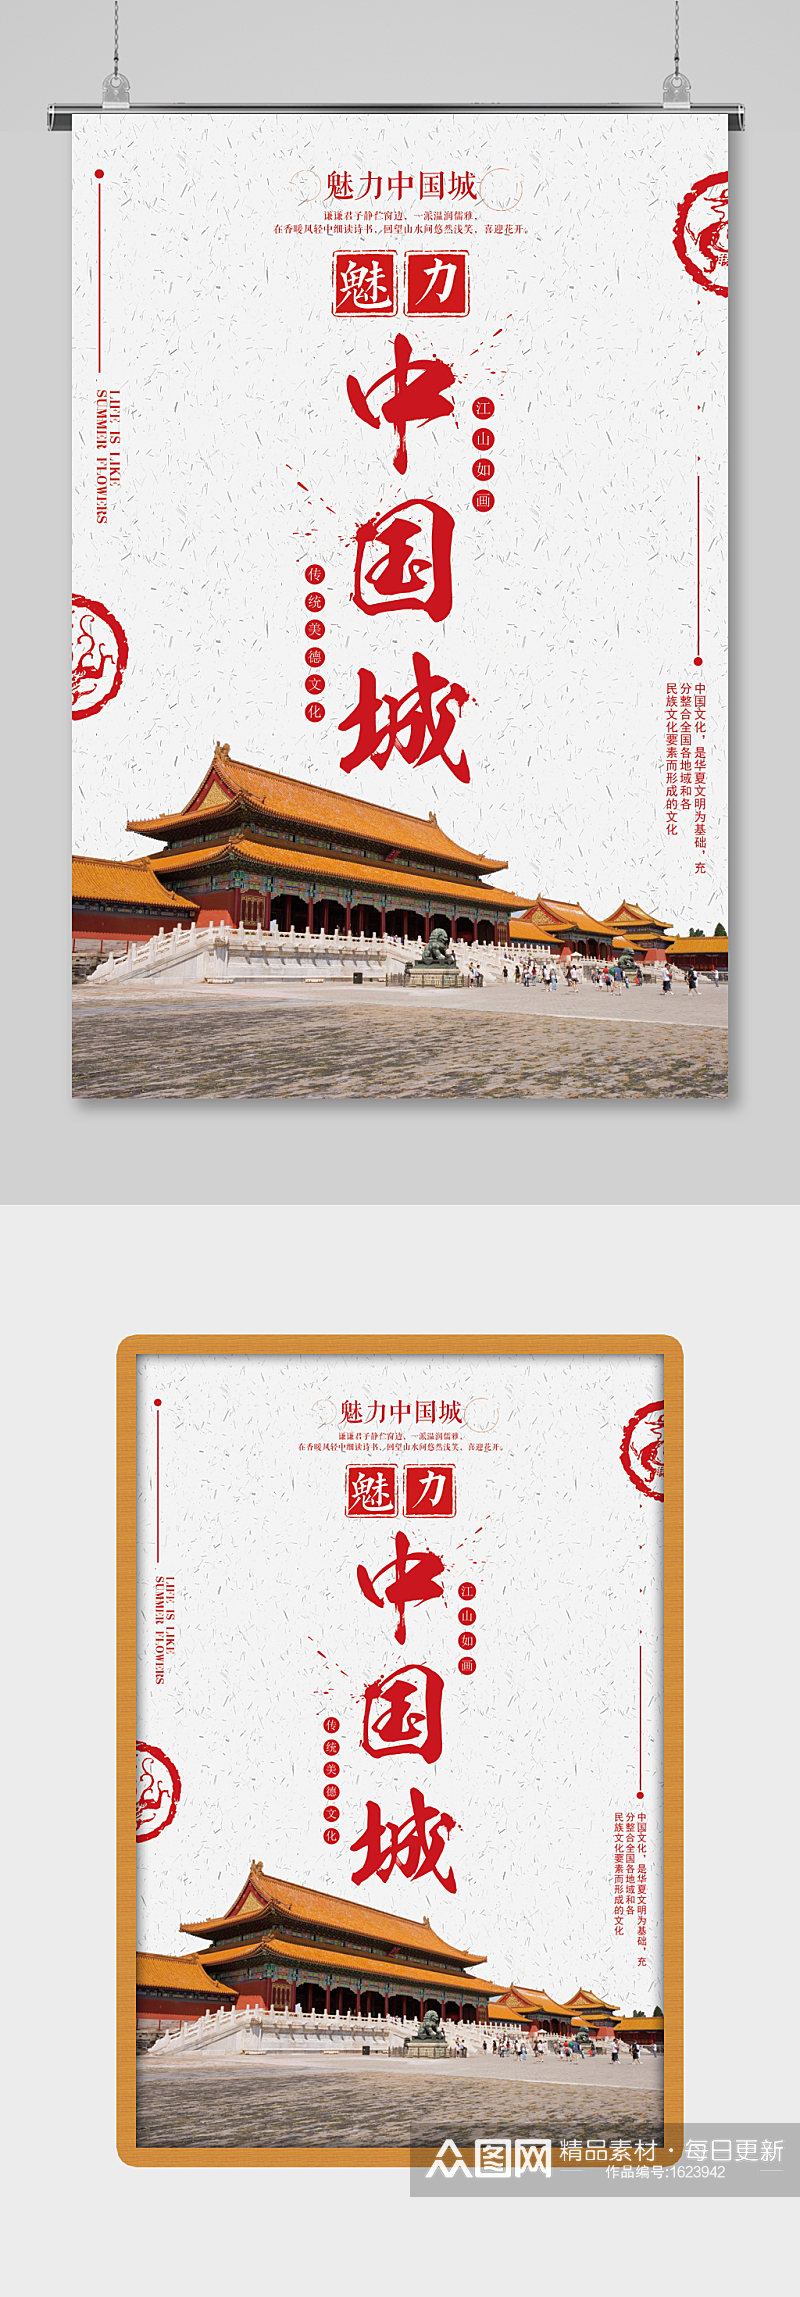 简洁红色旅游魅力中国城海报设计素材